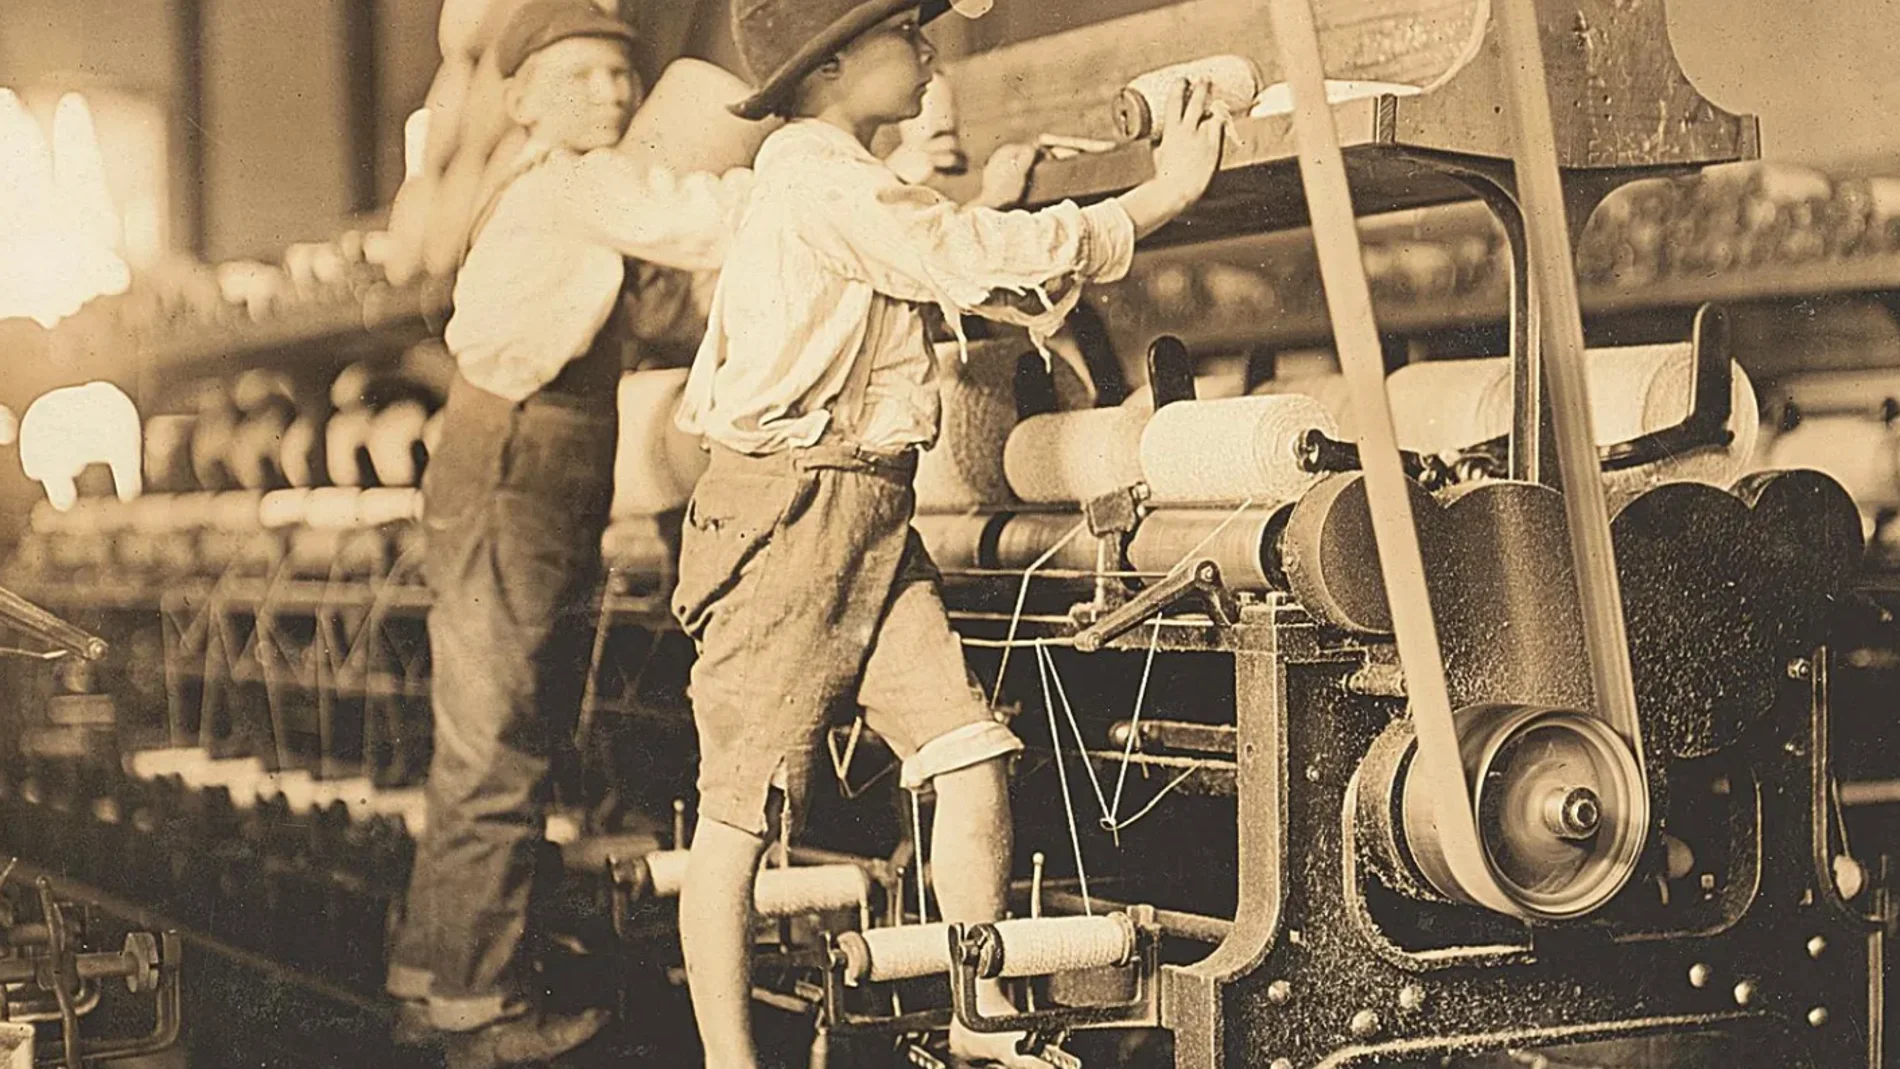 Unos niños trabajando en una fábrica de telares mecánicos donde se les empleaba por su bajo coste